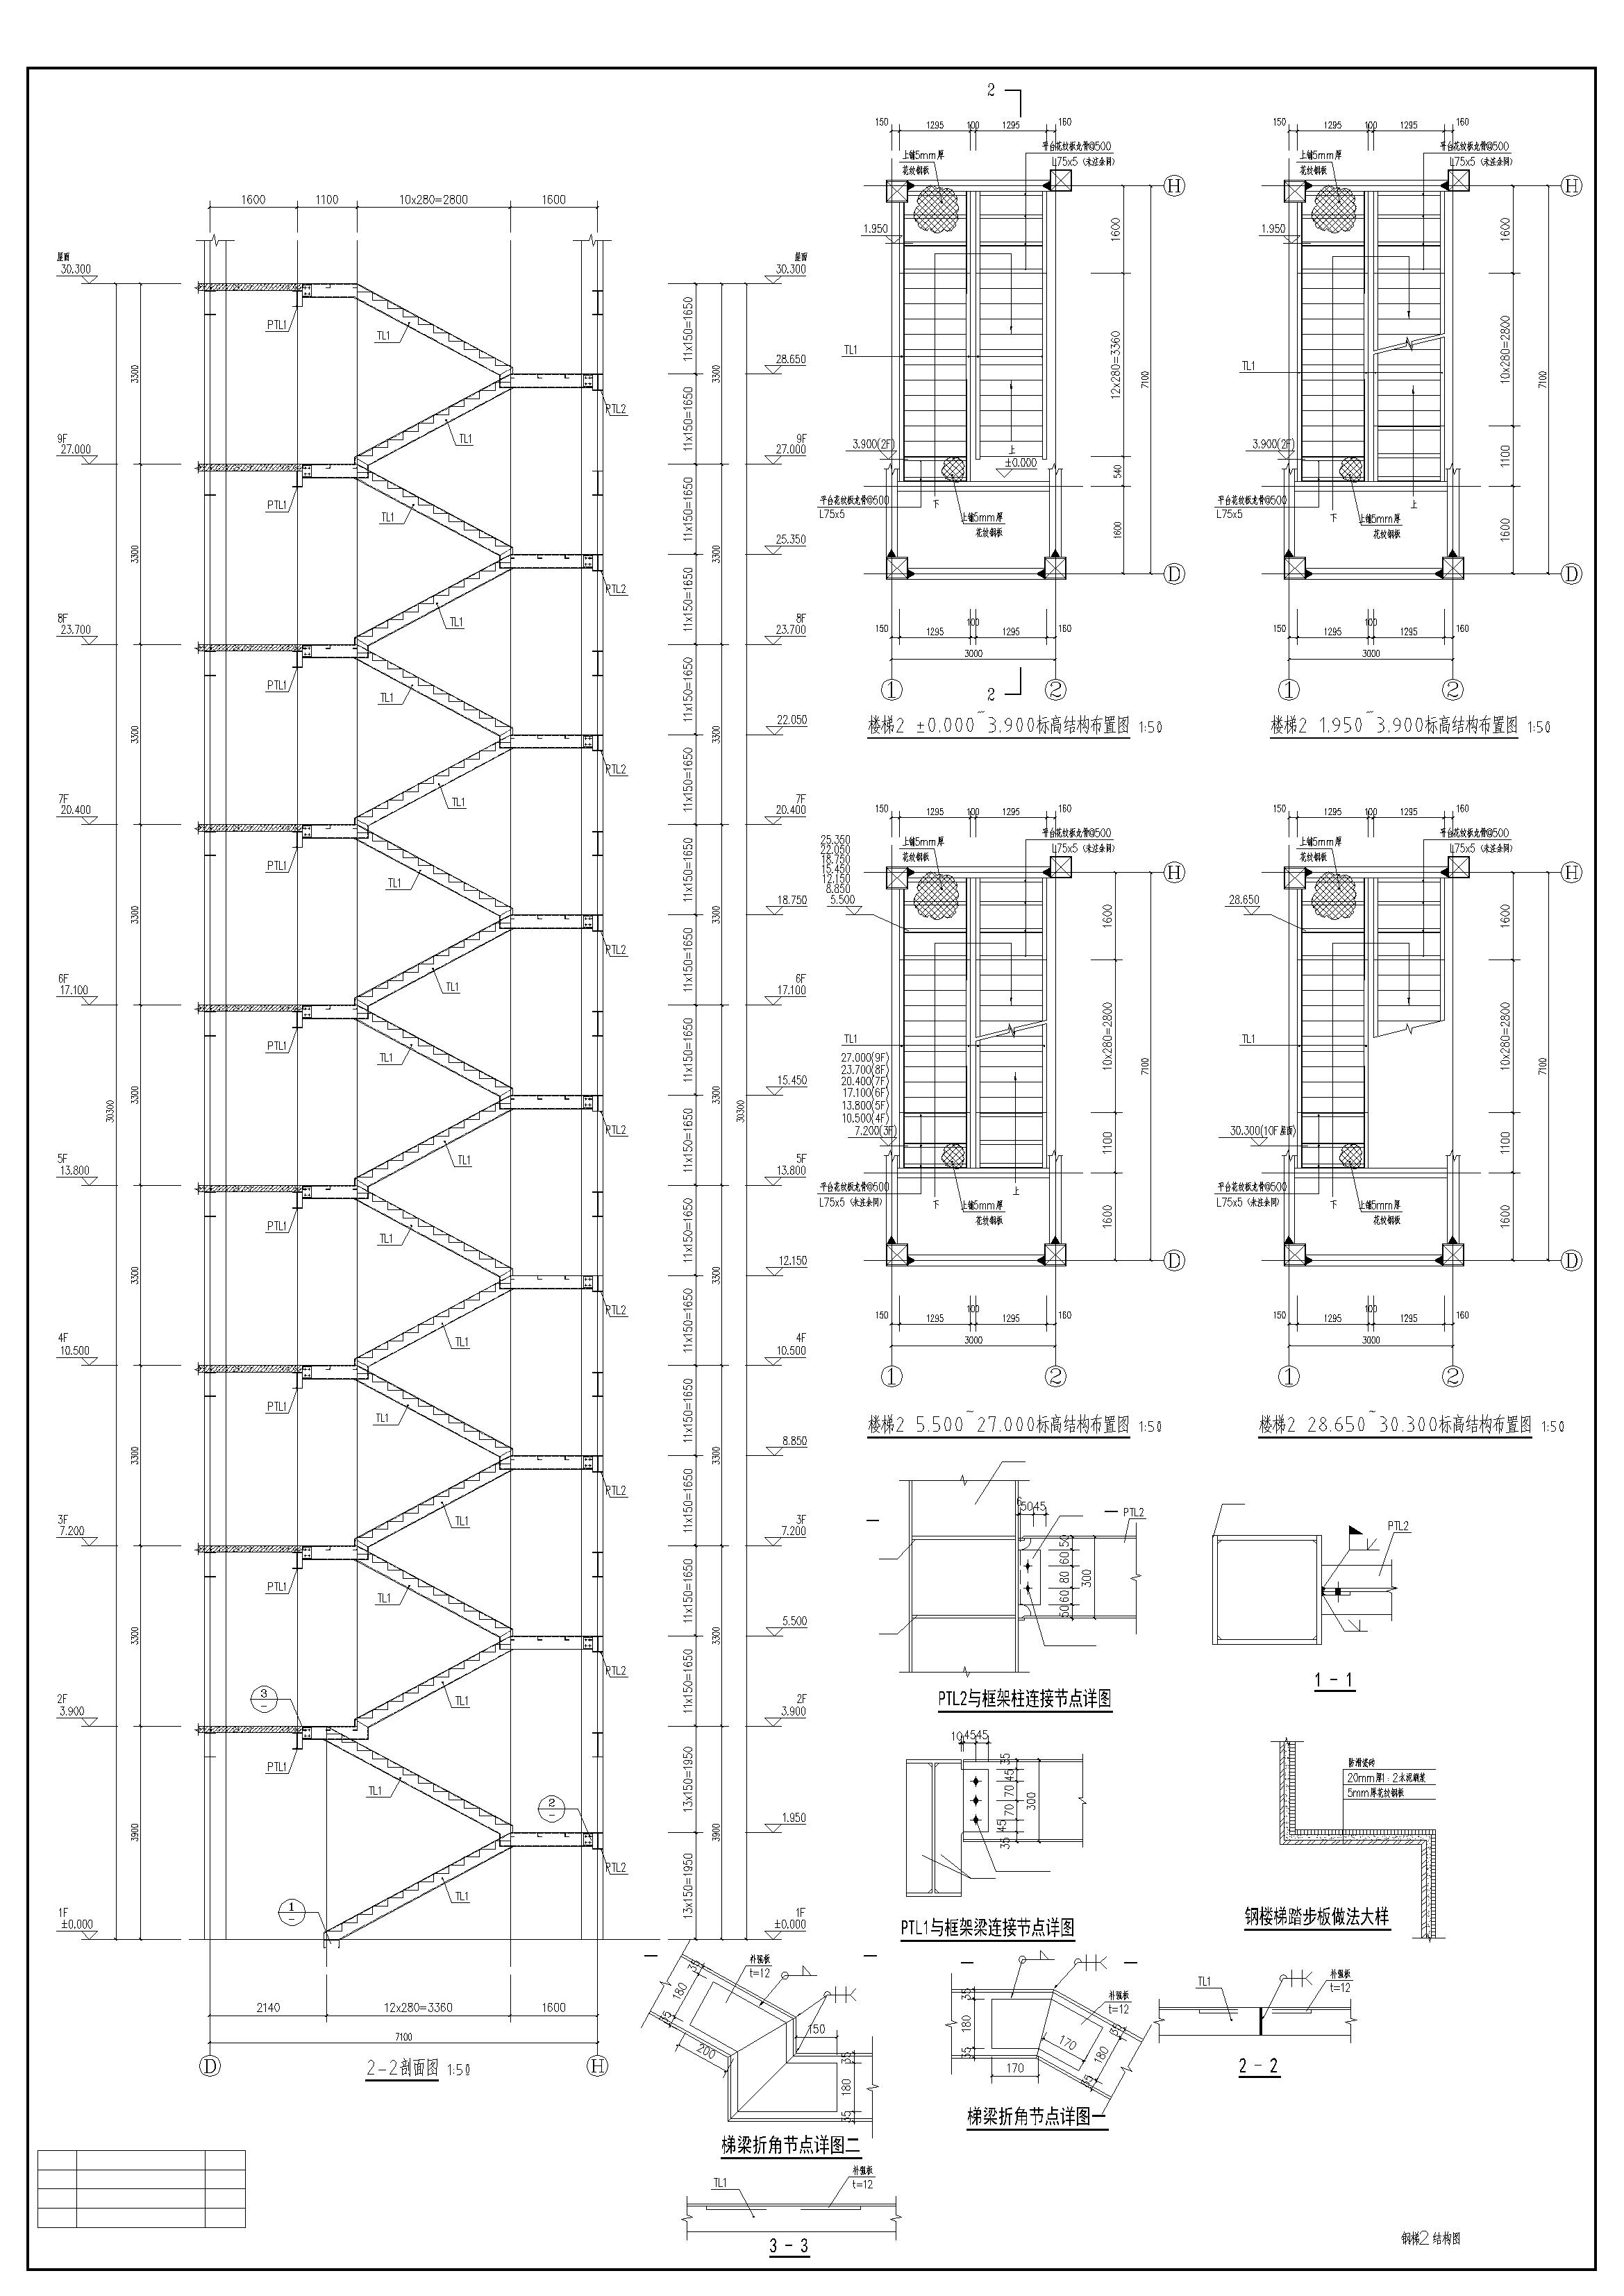 多高层钢框架结构的钢梯施工图